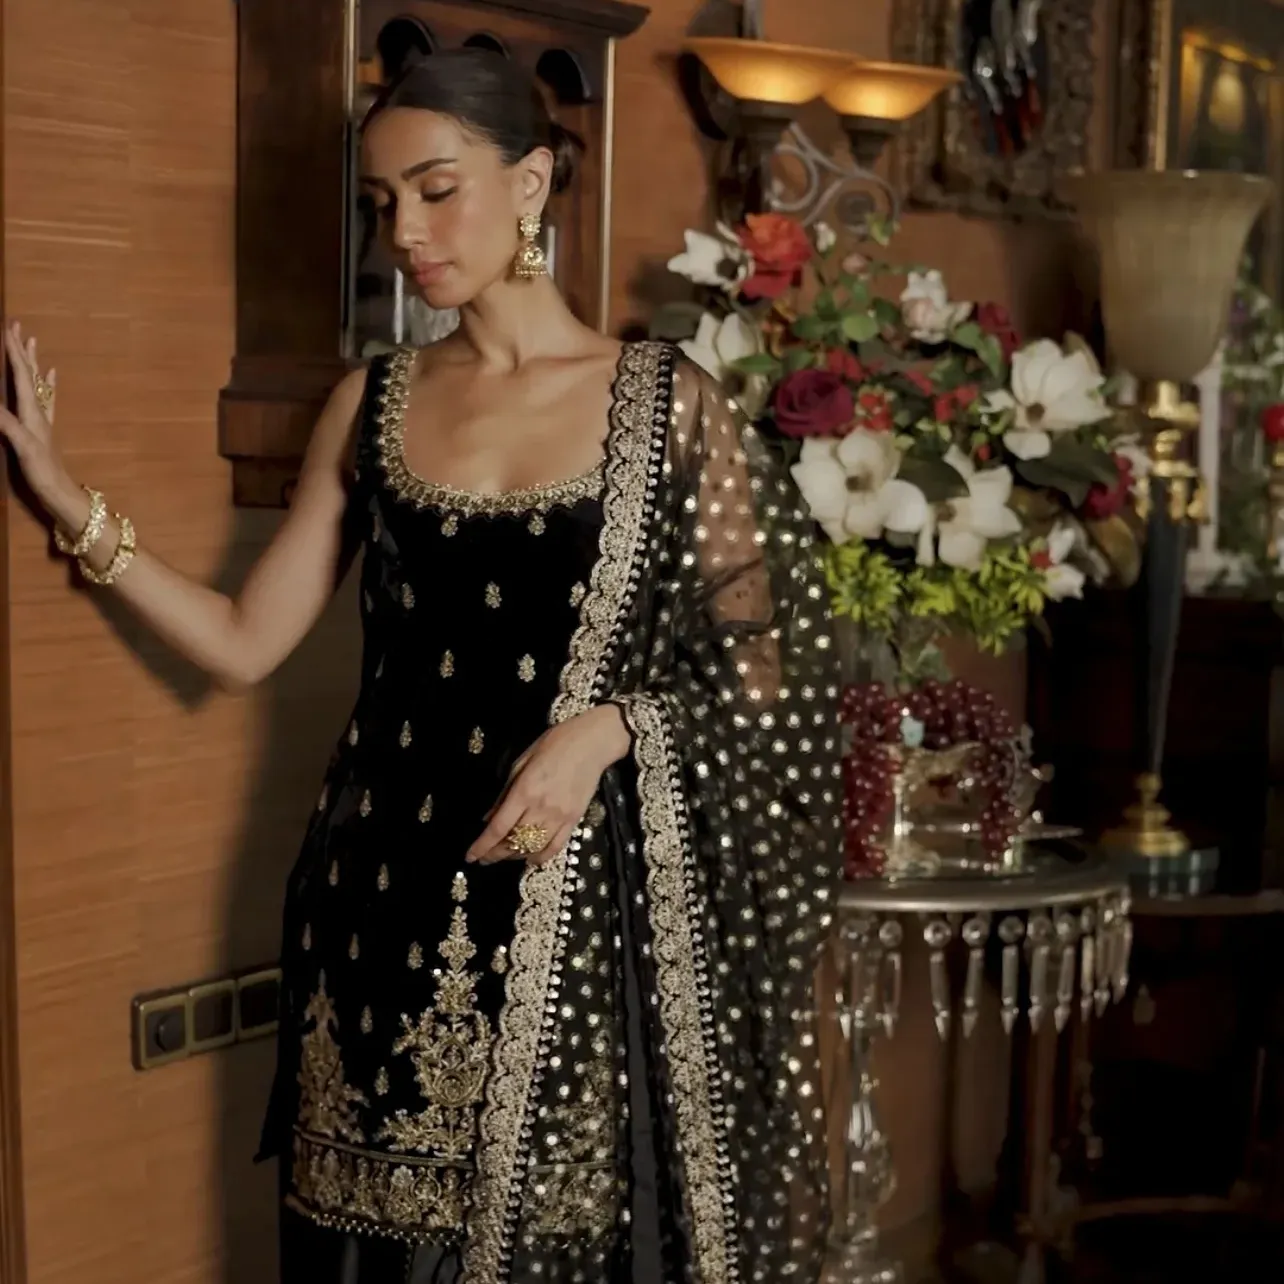 भारतीय आपूर्तिकर्ता पाकिस्तानी से महिलाओं के लिए भारी कढ़ाई वाला नया संग्रह मखमली कढ़ाई सलवार कमीज सूट